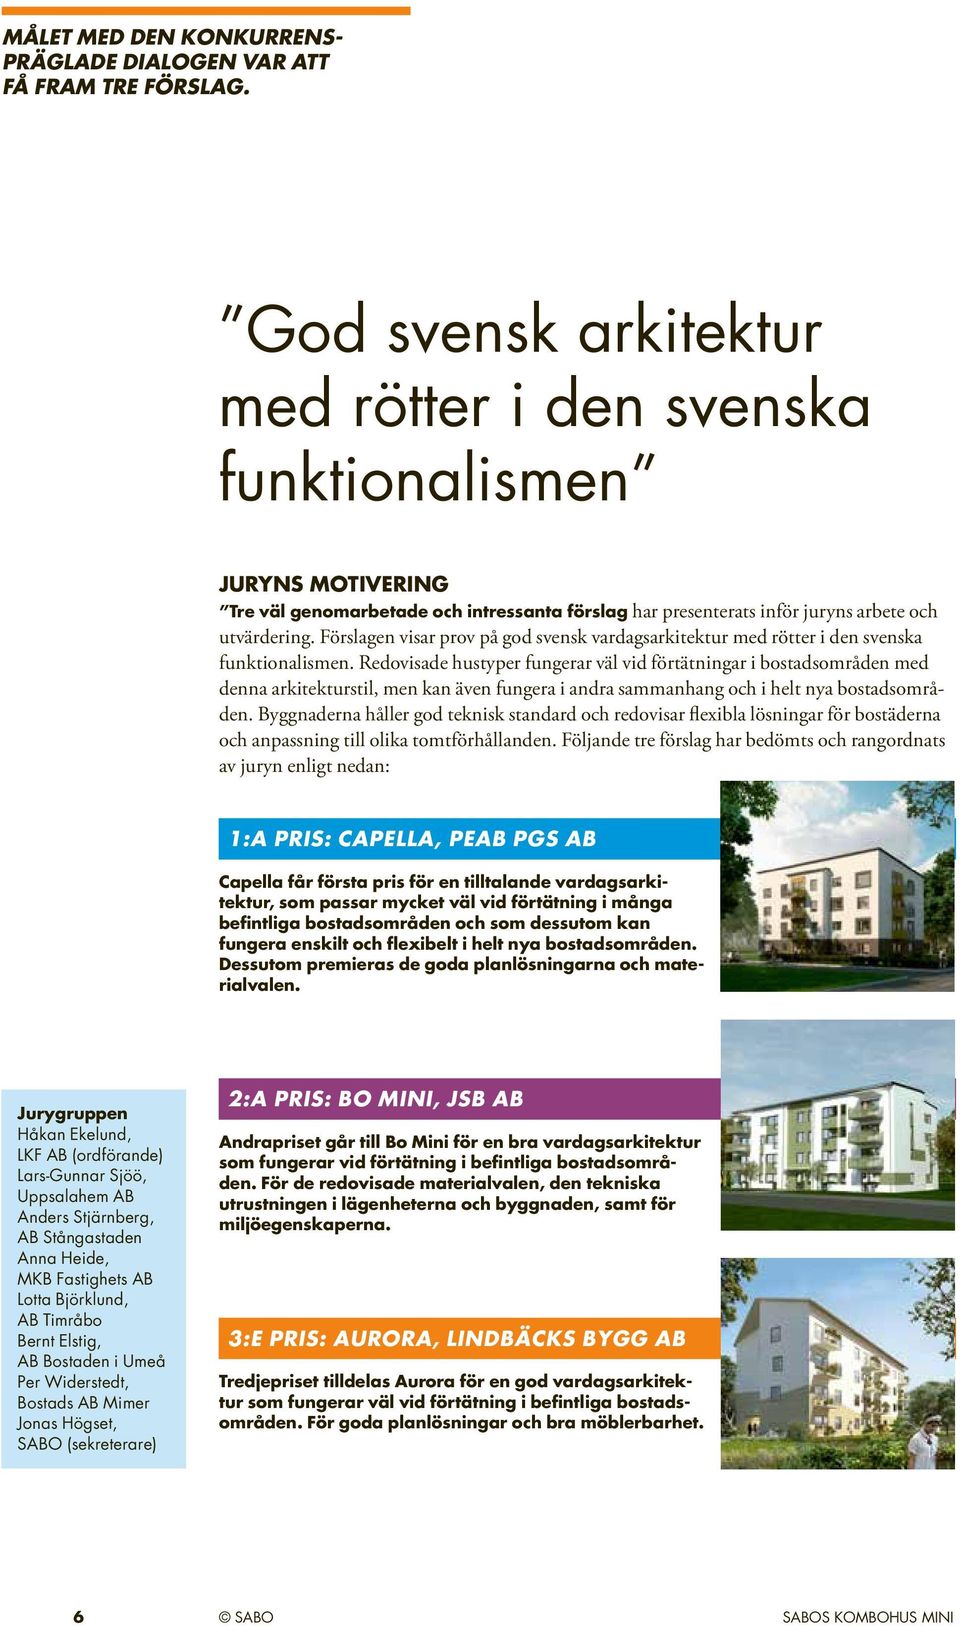 Förslagen visar prov på god svensk vardagsarkitektur med rötter i den svenska funktionalismen.